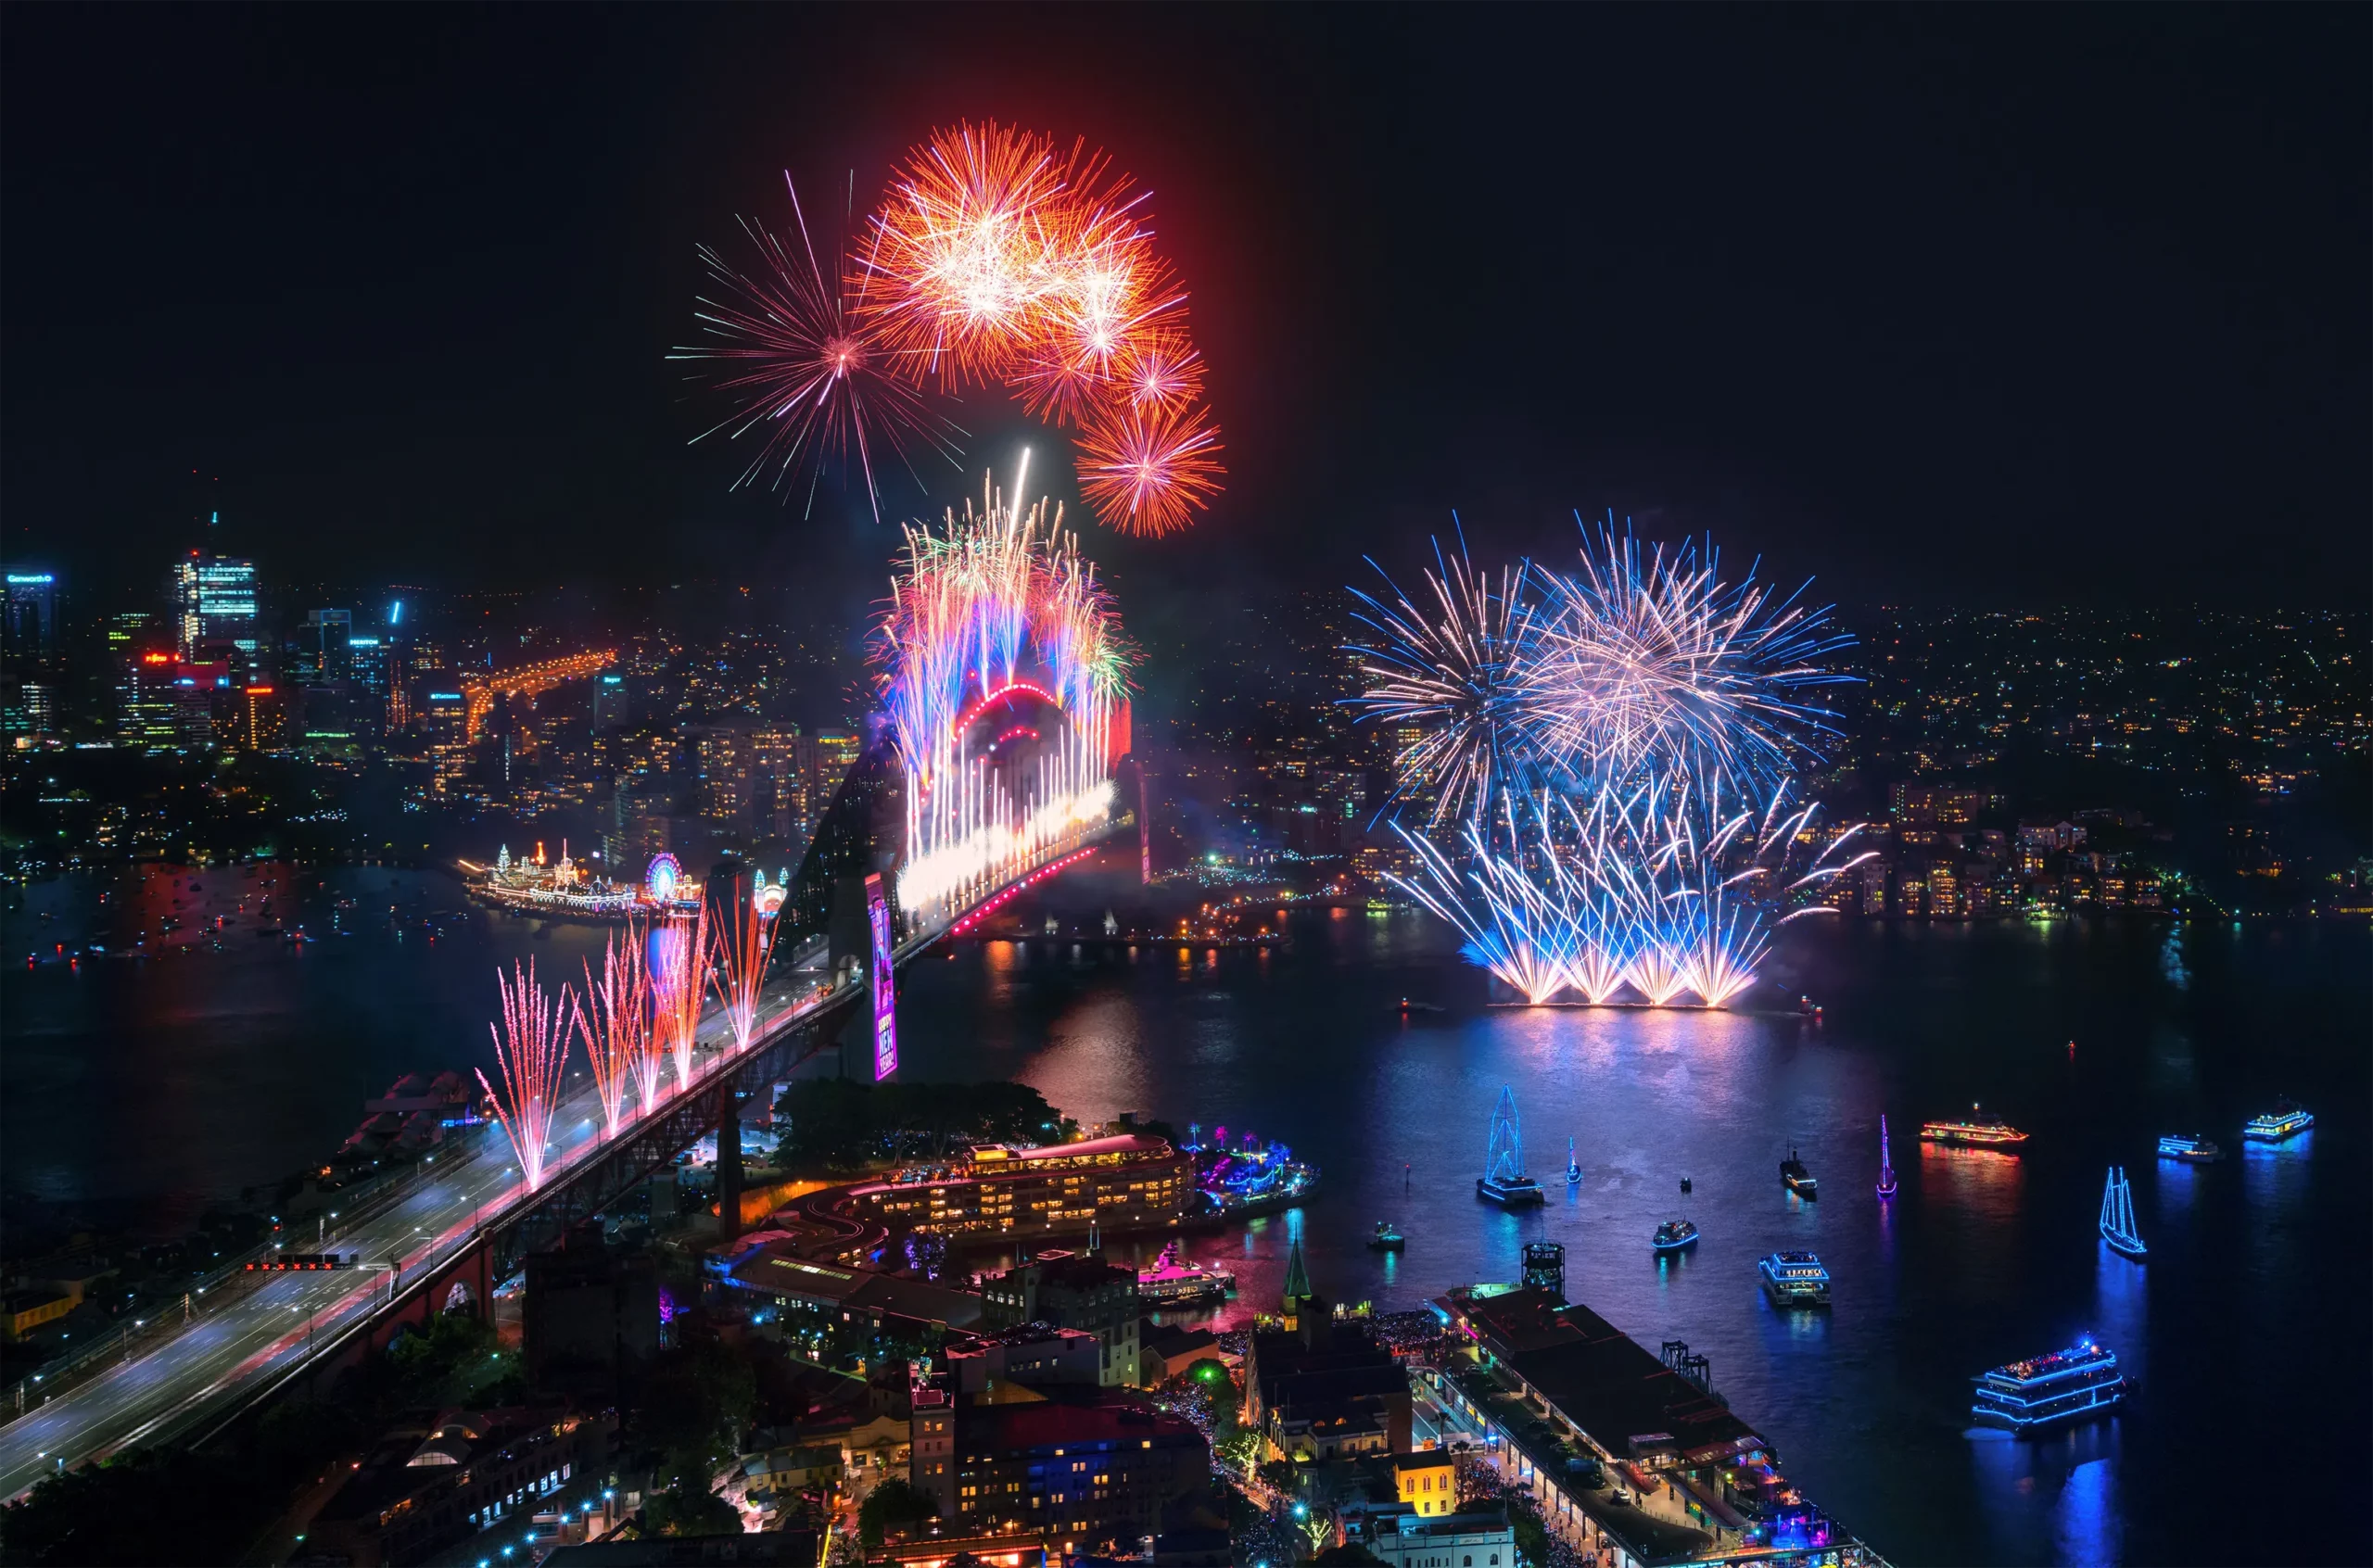 Fireworks exploding over Sydney Harbour. Credit Daniel Tran.